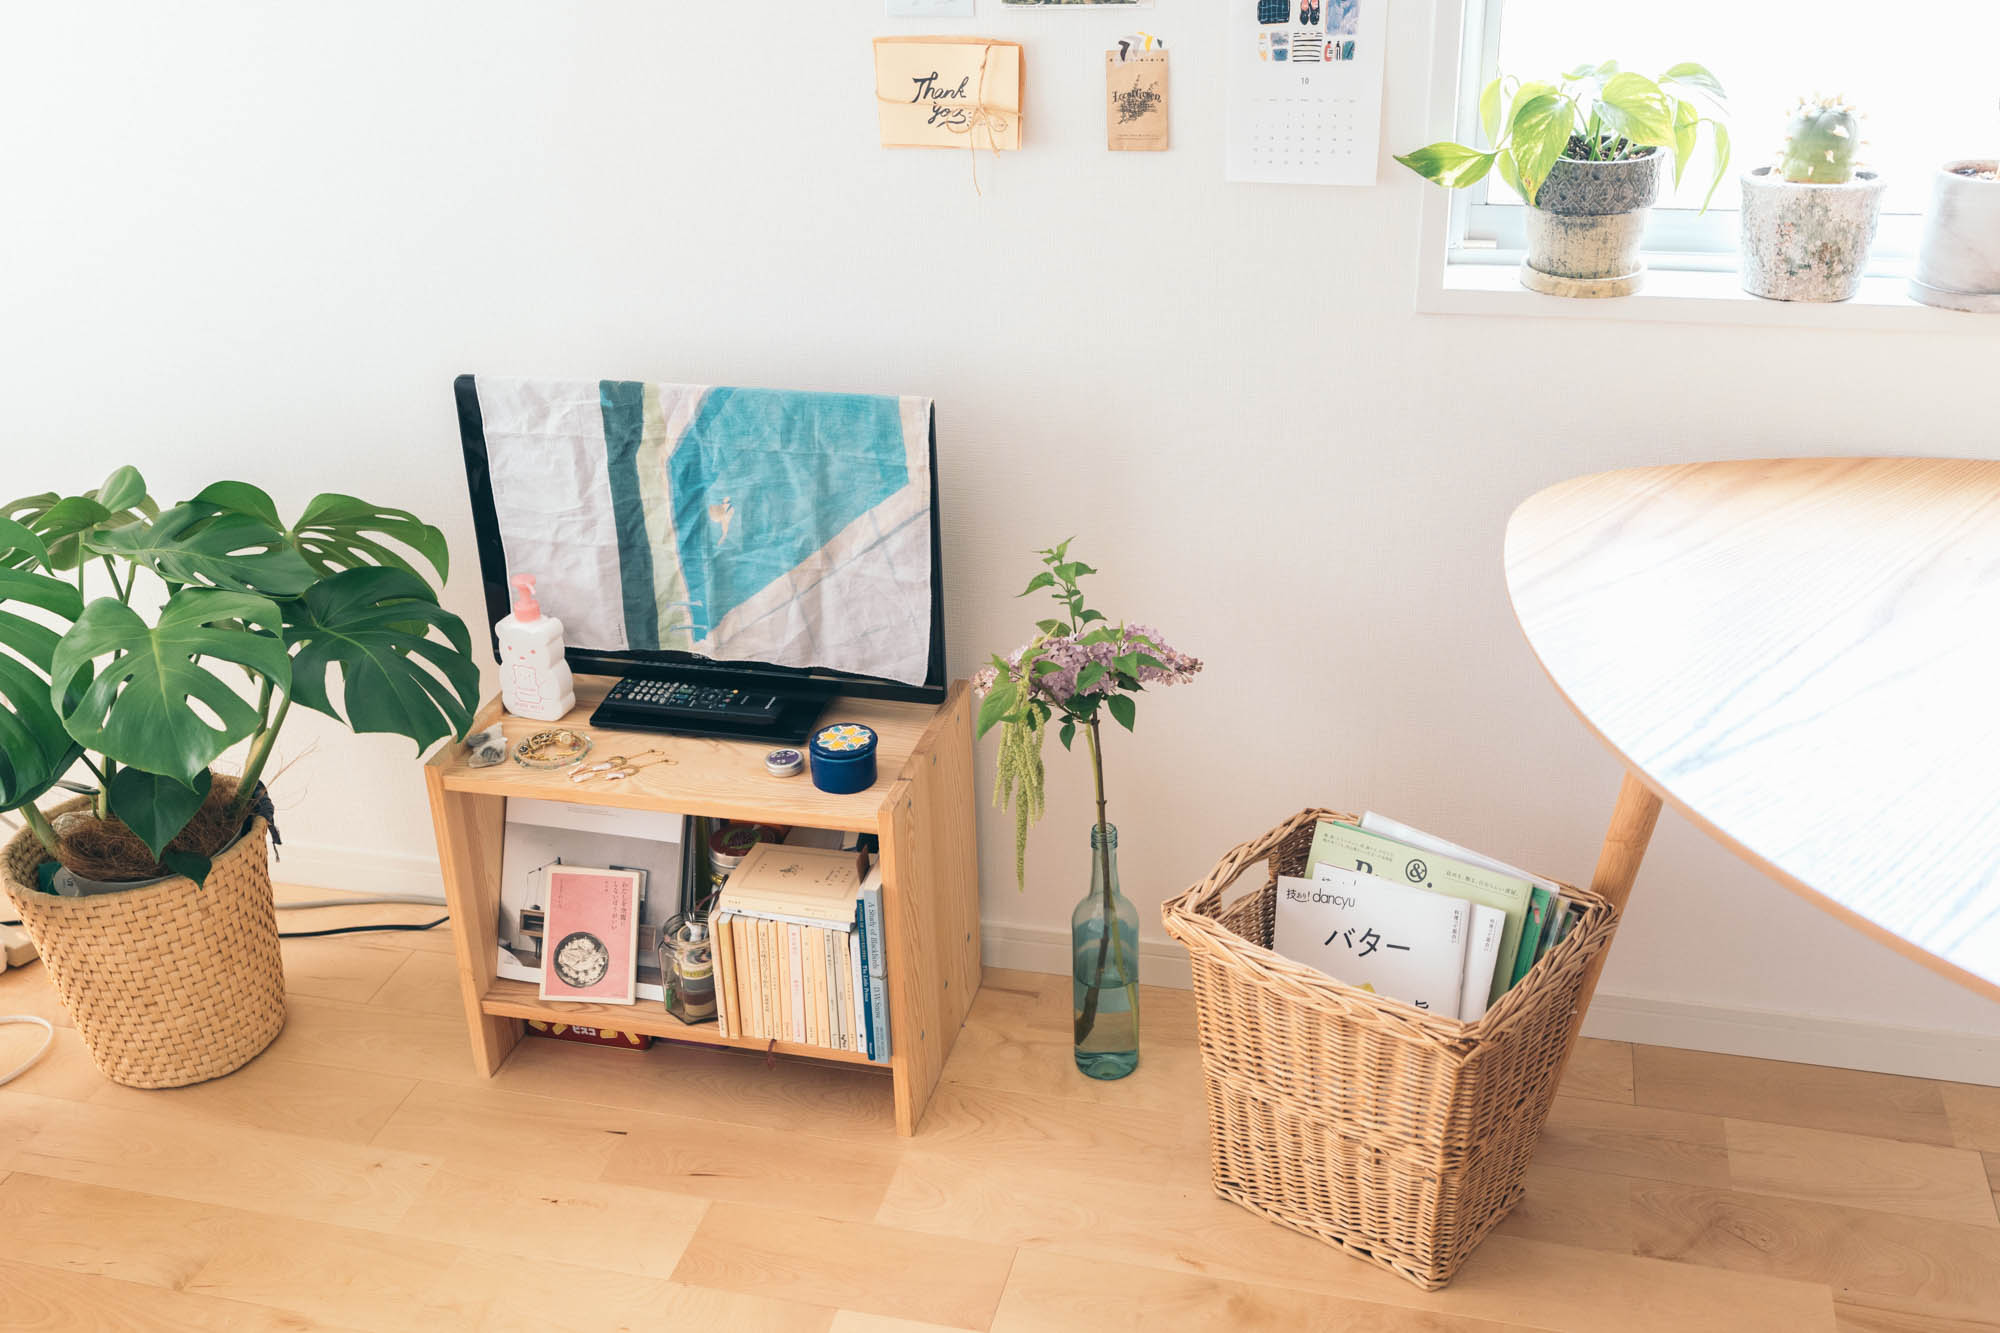 テレビ台はIKEAのもの。木の家具や、藤のカゴなど自然素材のものがよく馴染むお部屋です。